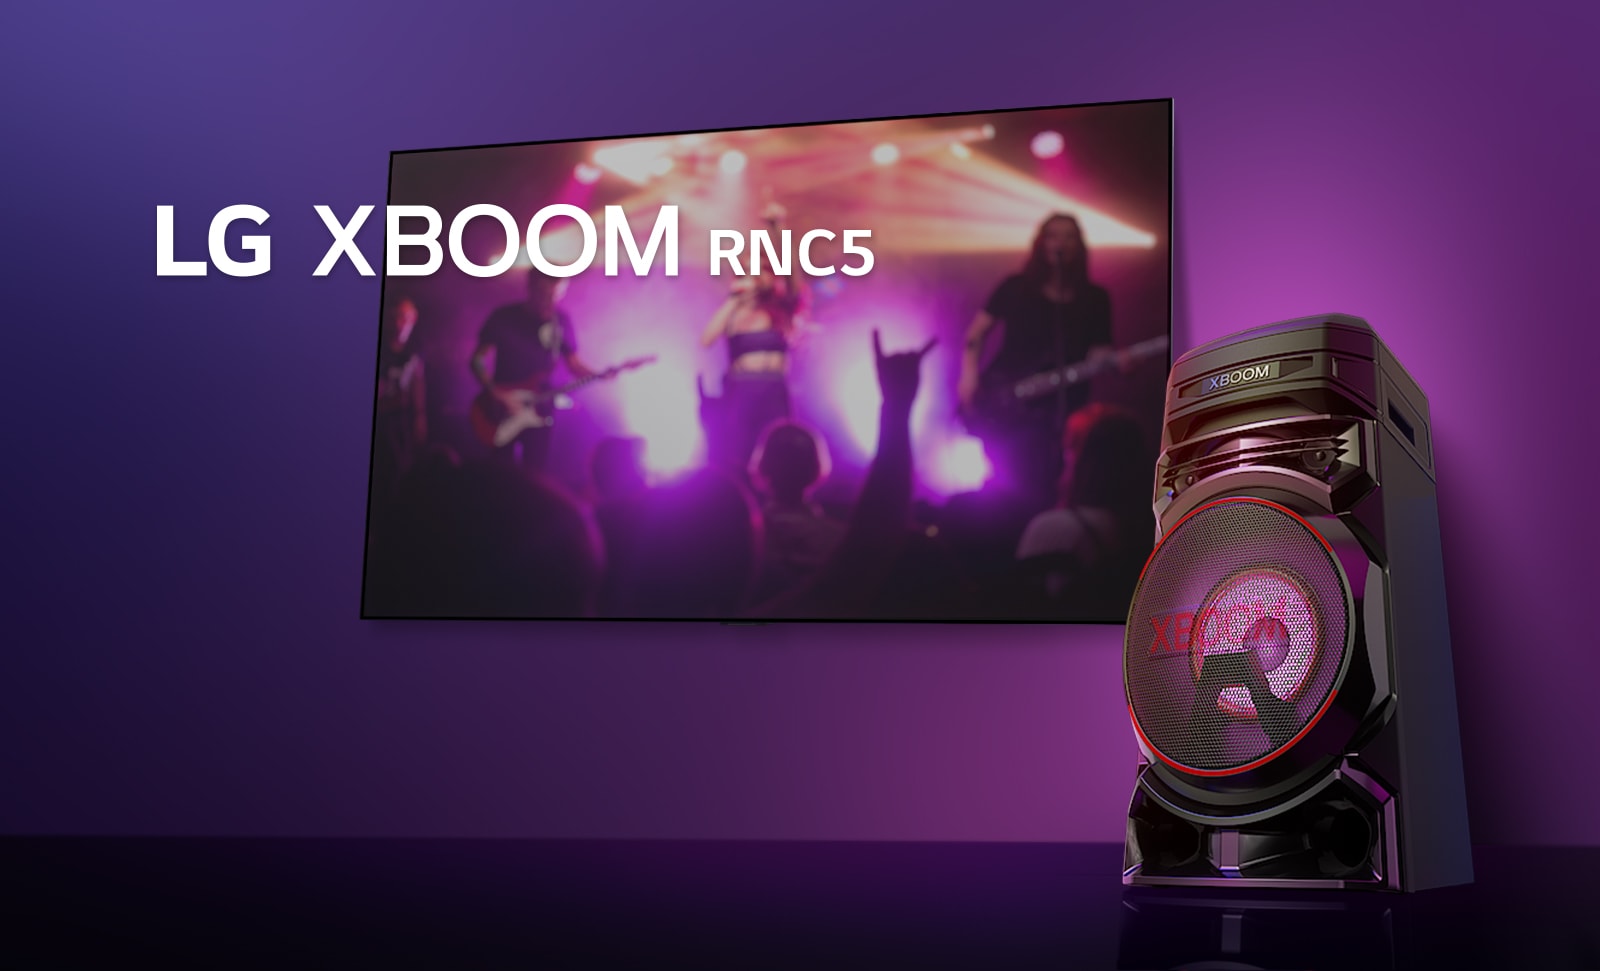 "O vedere de jos a lateralei drepte a LG XBOOM RNC5 pe un fundal violet.  Luminile XBOOM sunt, de asemenea, violet. Și un ecran TV afișează o scenă de concert."